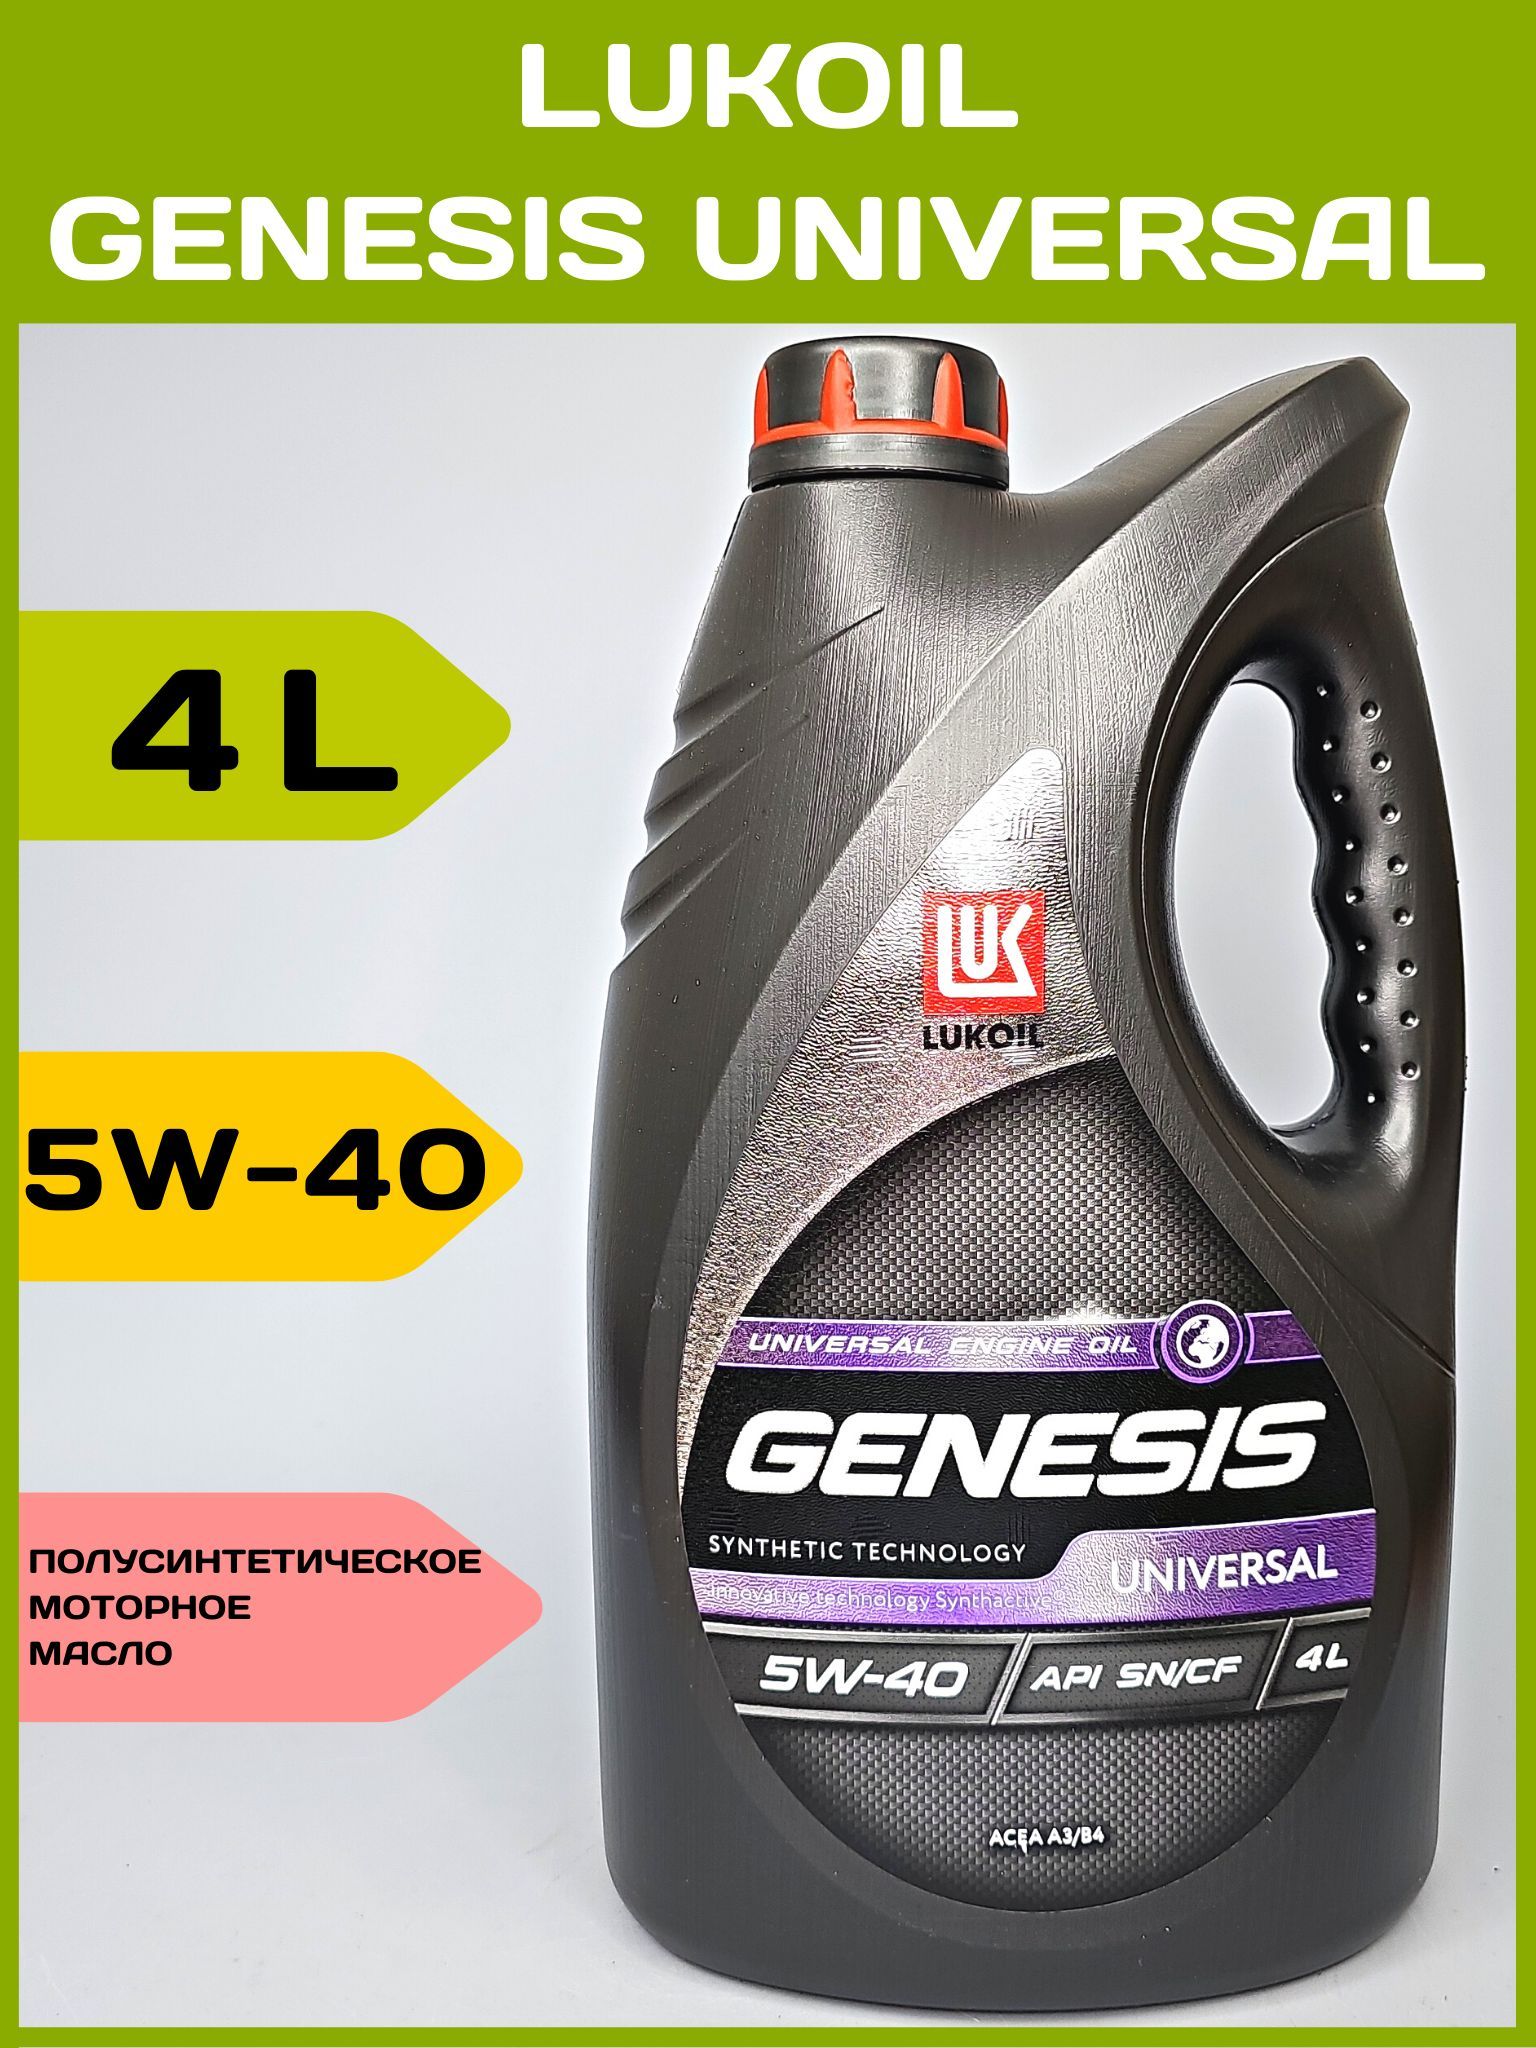 Лукойл 5 40 отзывы. Лукойл Genesis Universal 5w40. Lukoil Genesis Universal 5w-40 4л. 3148631 Лукойл. Генезис универсал 5-40.